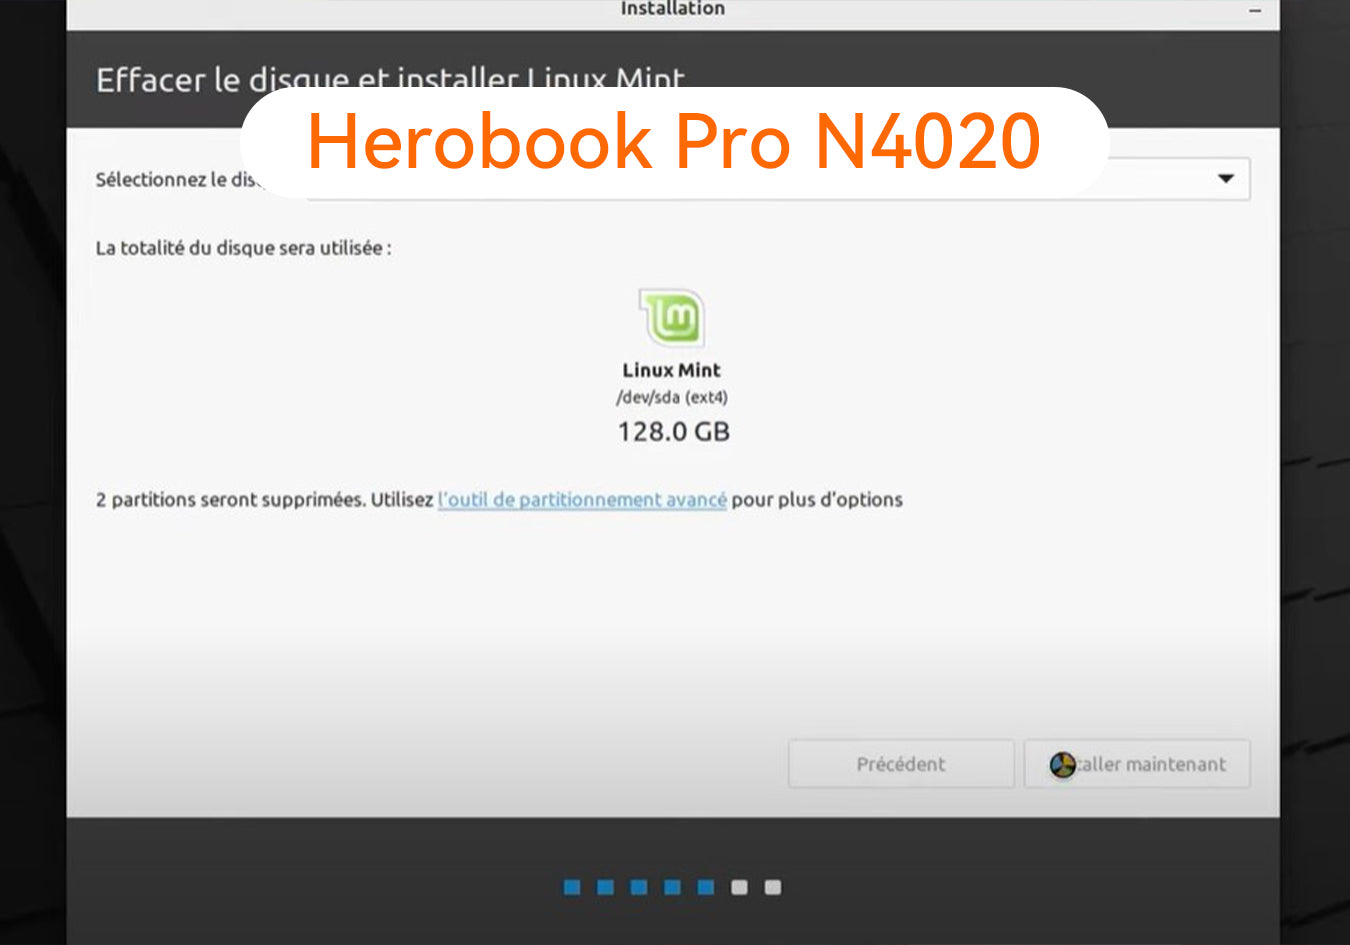 Herobook Pro N4020: Steve instala Linux de forma efectiva